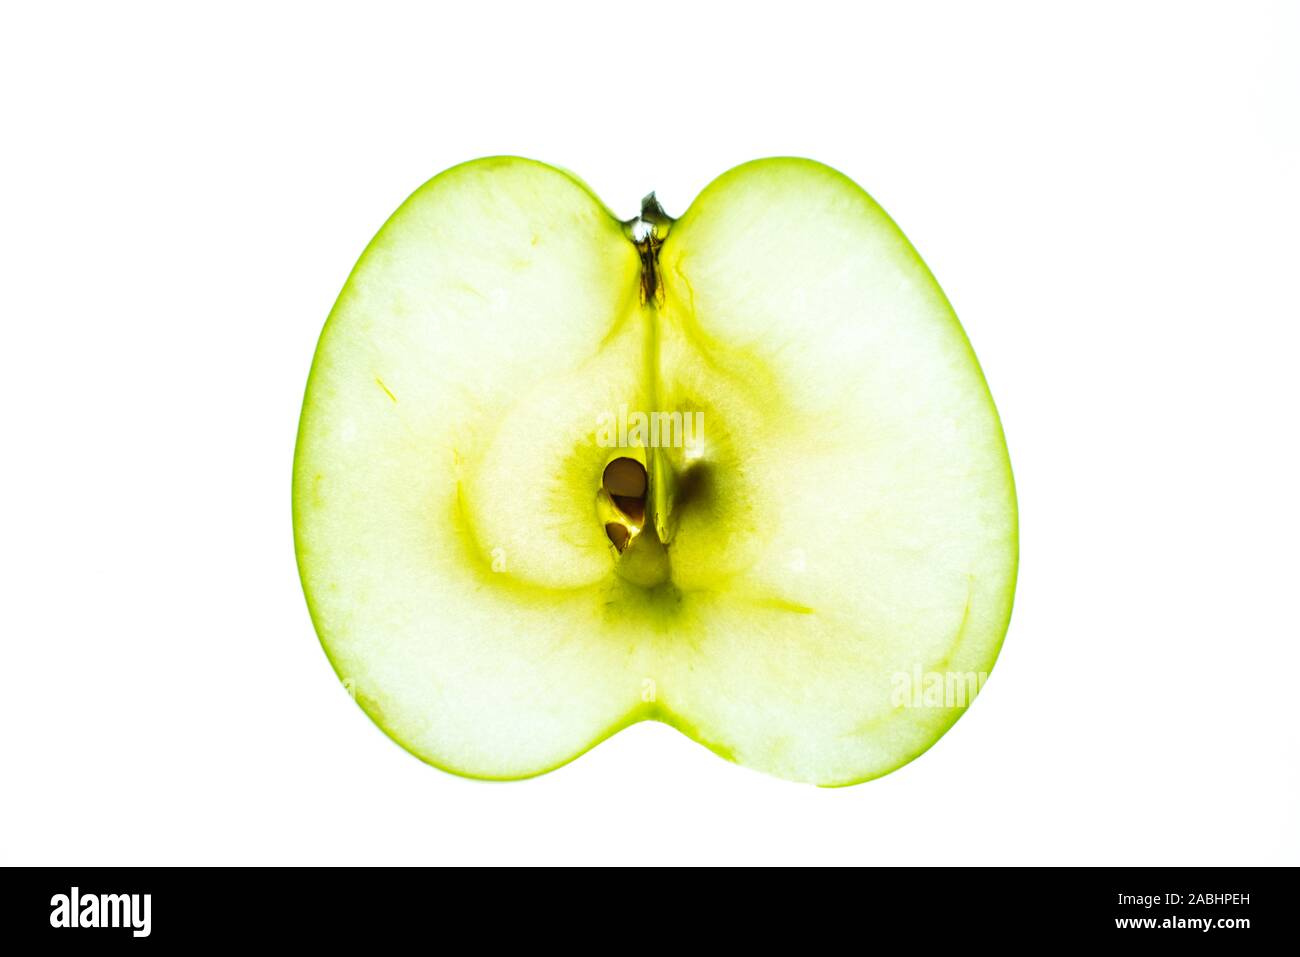 Section transversale lumineuse translucide de la pomme verte isolée sur fond blanc Banque D'Images